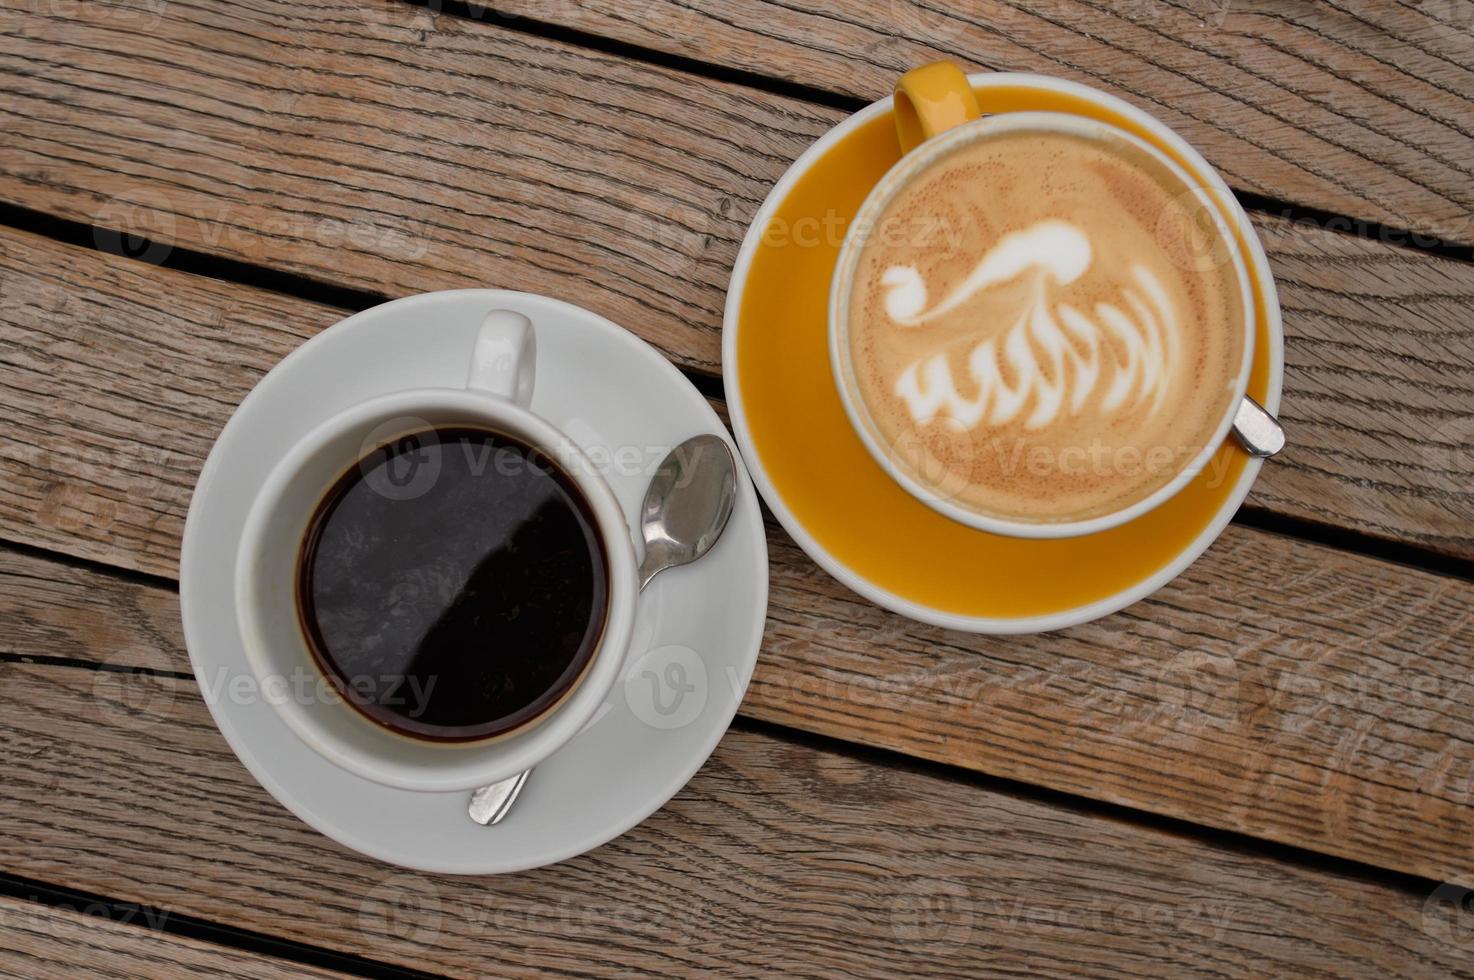 cappuccino met latte art en zwarte koffie op een houten tafel foto